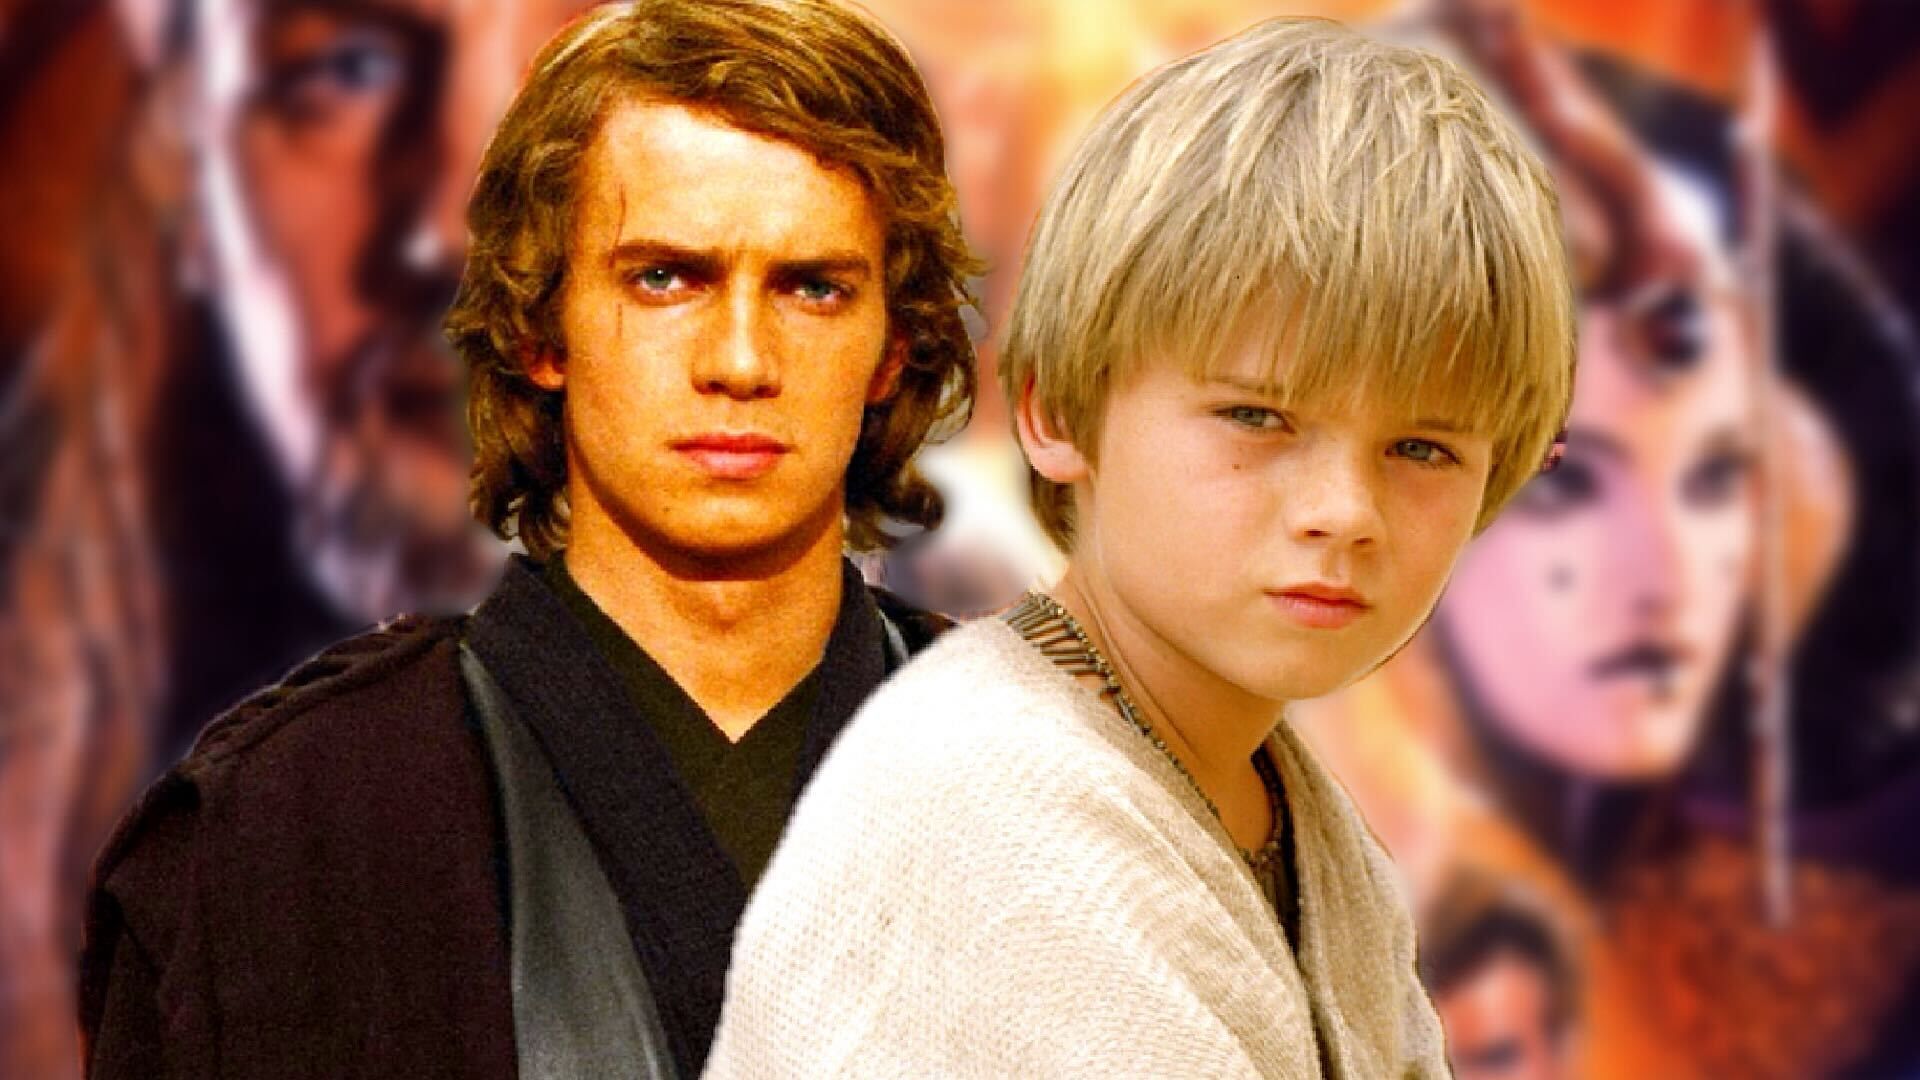 Jake Lloyd and Hayden Christensen as Anakin Skywalker